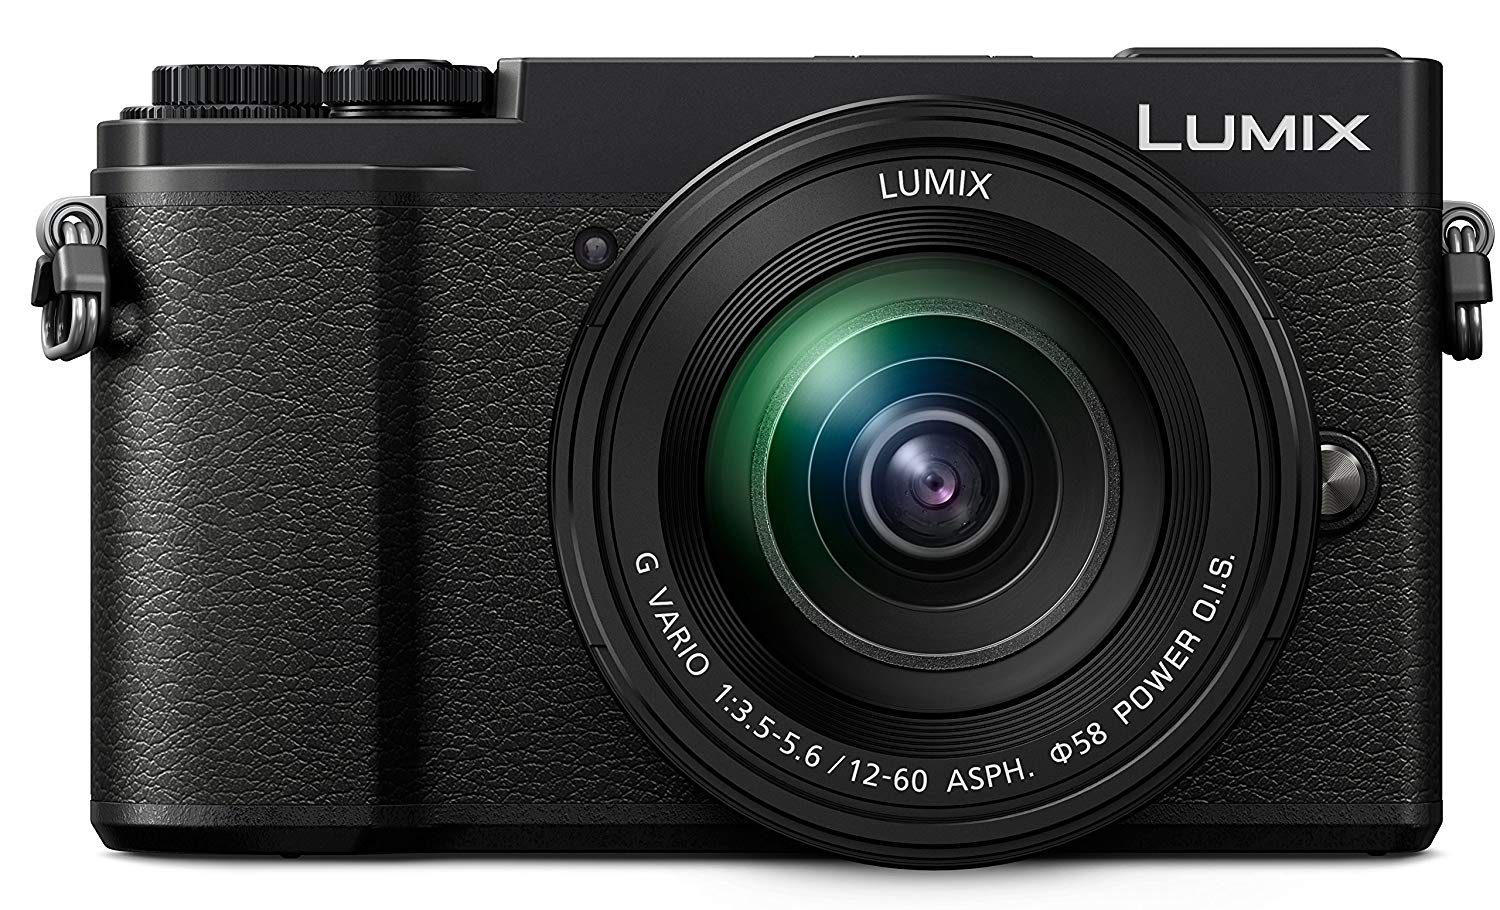 Panasonic كاميرا لوميكس GX9 بدون مرآة مع عدسة 12-60 ملم F / 3.5-5.6 (أسود)